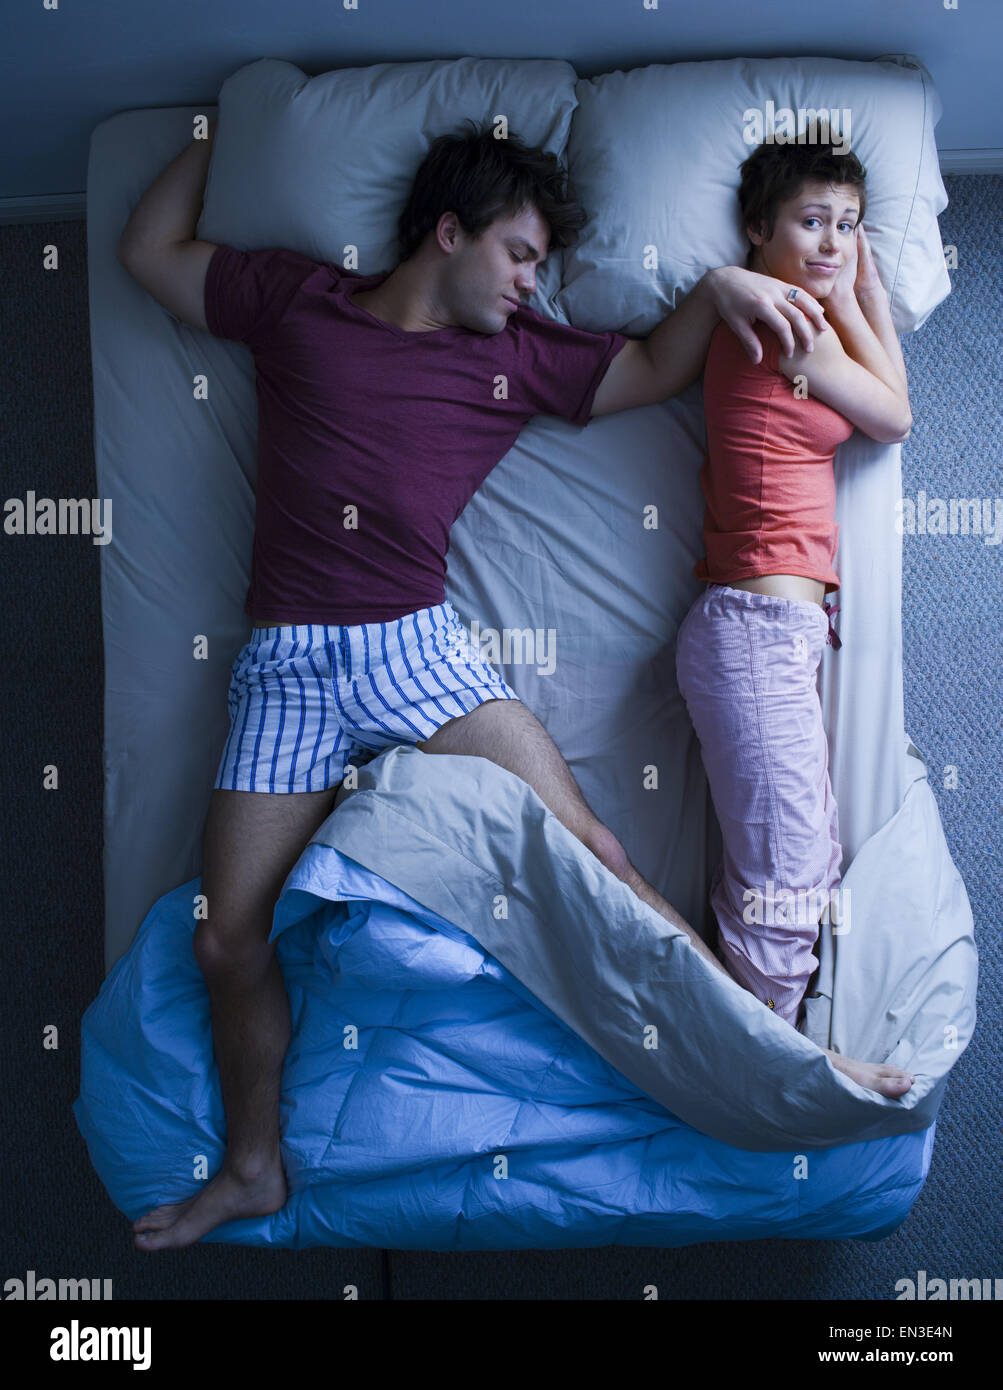 El hombre tumbado en la cama con una mujer durmiendo Foto de stock